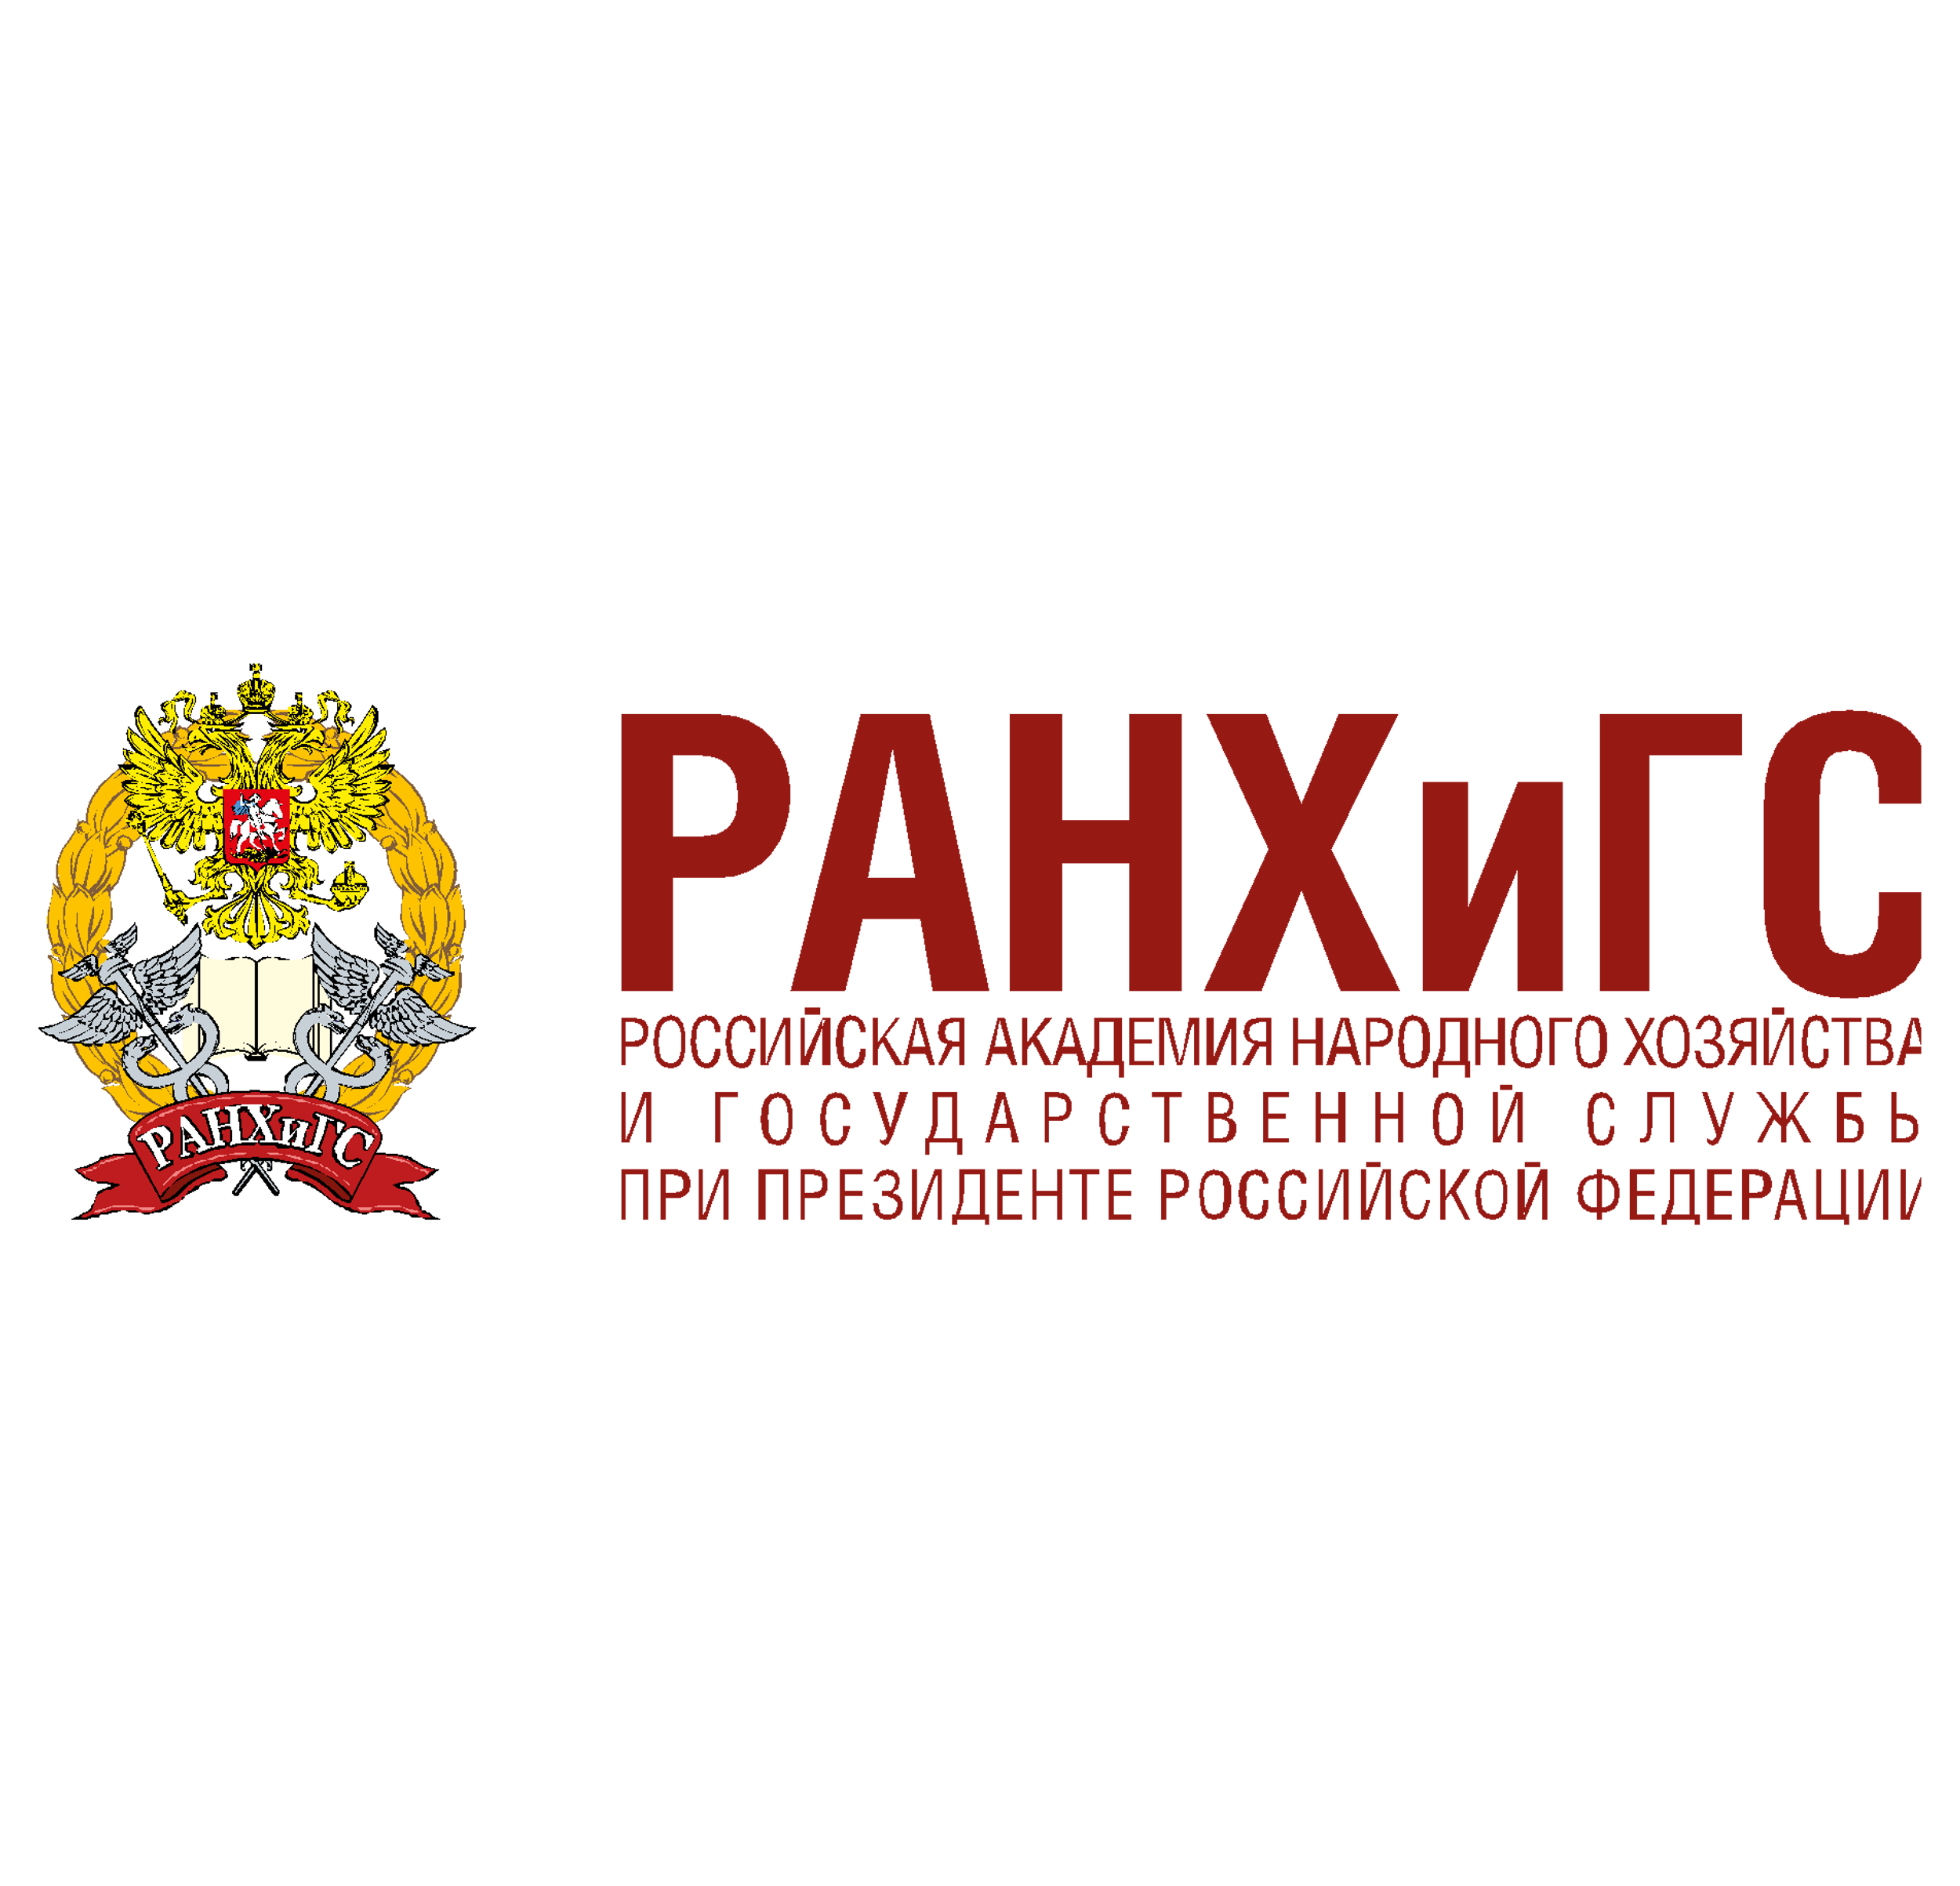 Президентская академия откроет филиал в Донецке - фото 1